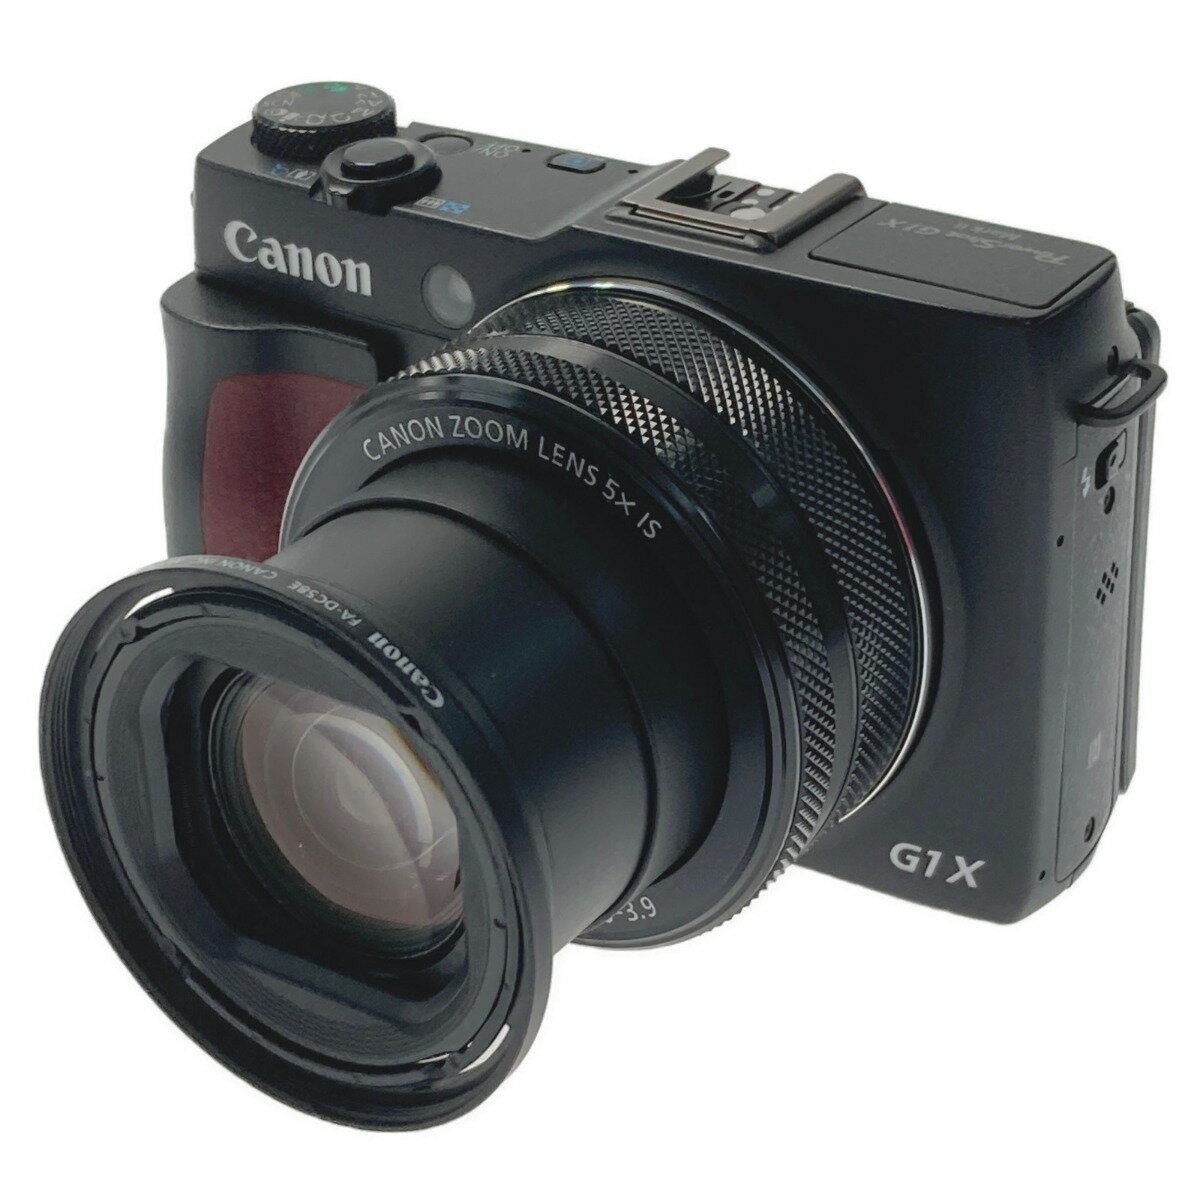 ☆☆【中古】CANON キャノン デジタルカメラ Power Shot G1 X Mark II 外箱付き PSG1X mark II Bランク